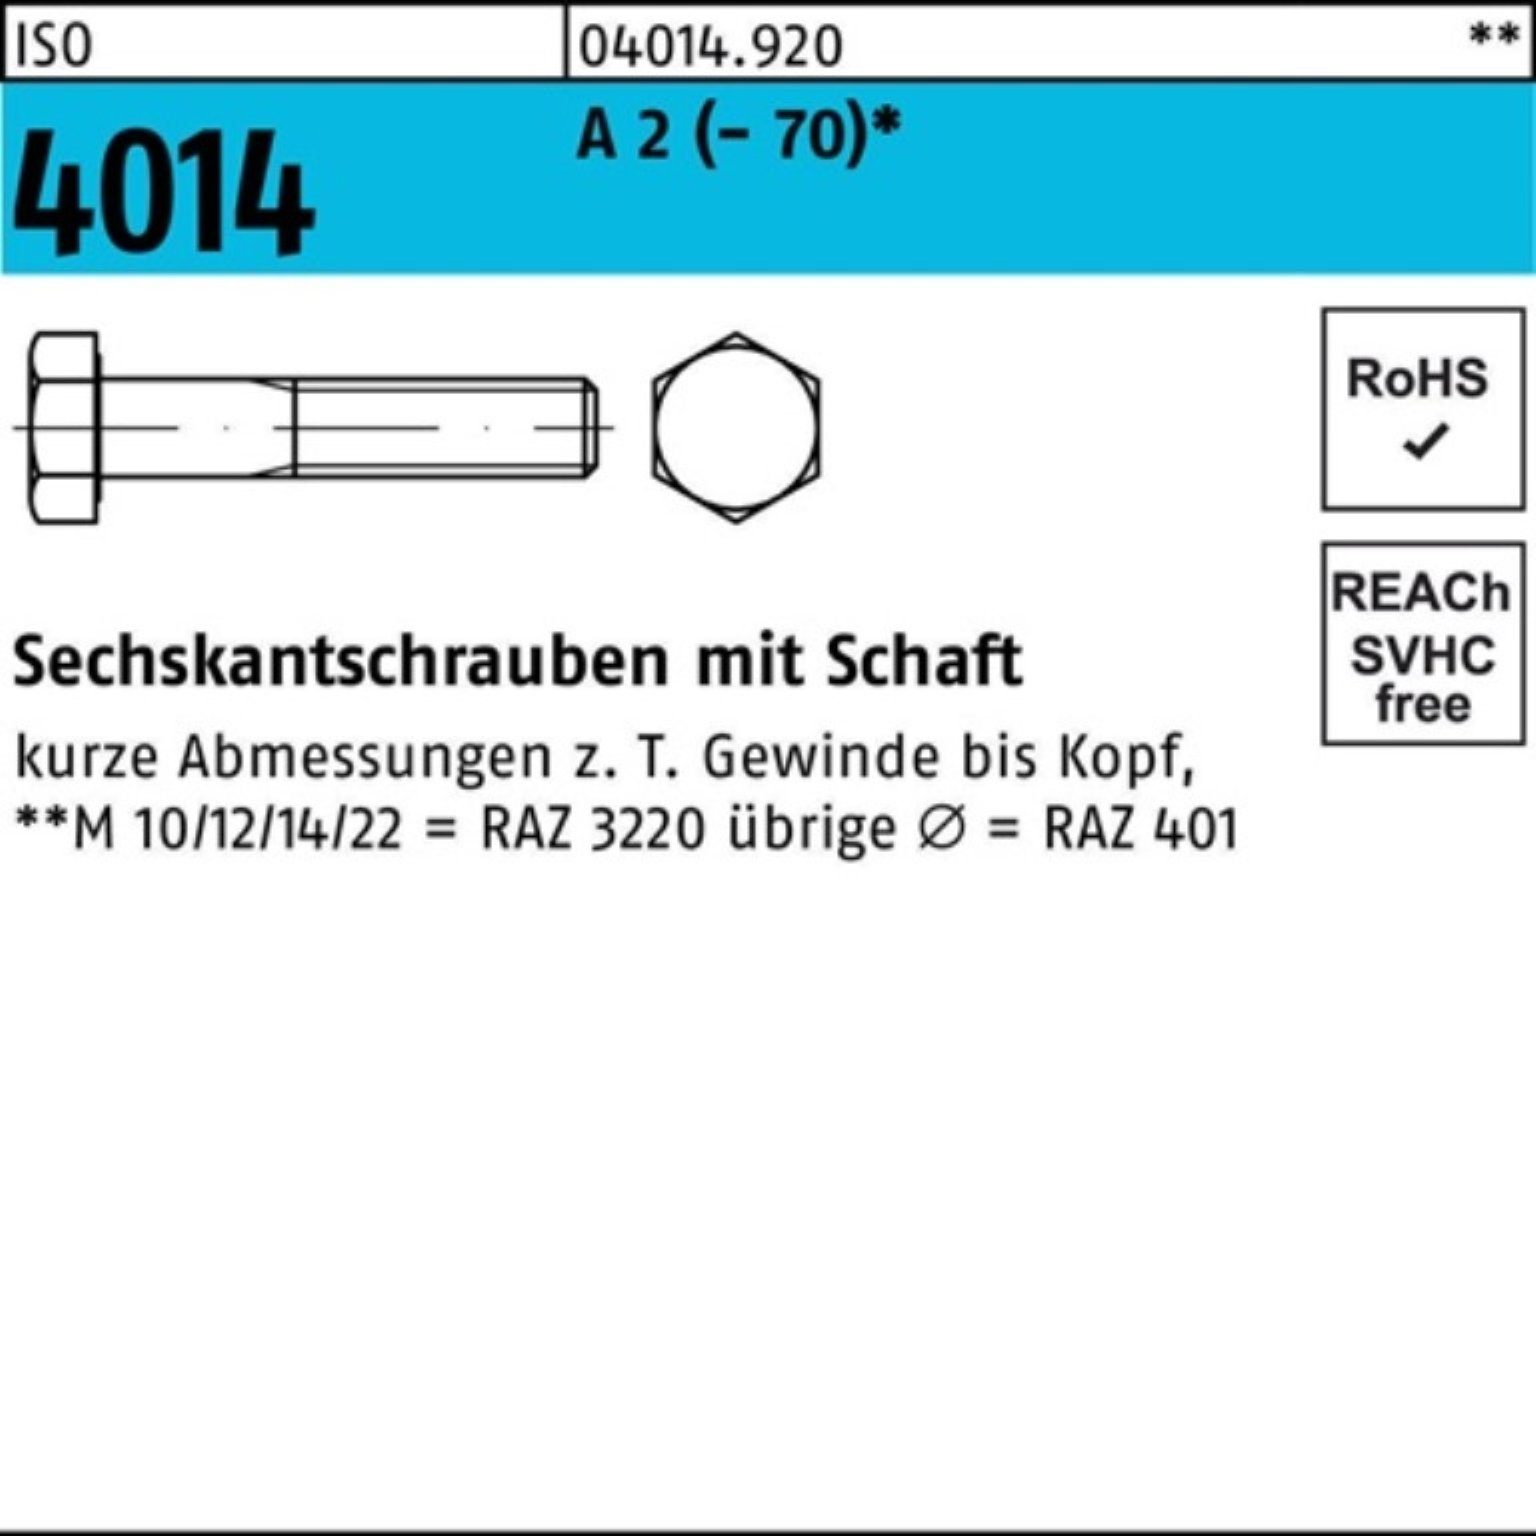 Bufab Sechskantschraube 100er Pack Sechskantschraube ISO 4014 Schaft M8x 100 A 2 (70) 100 St